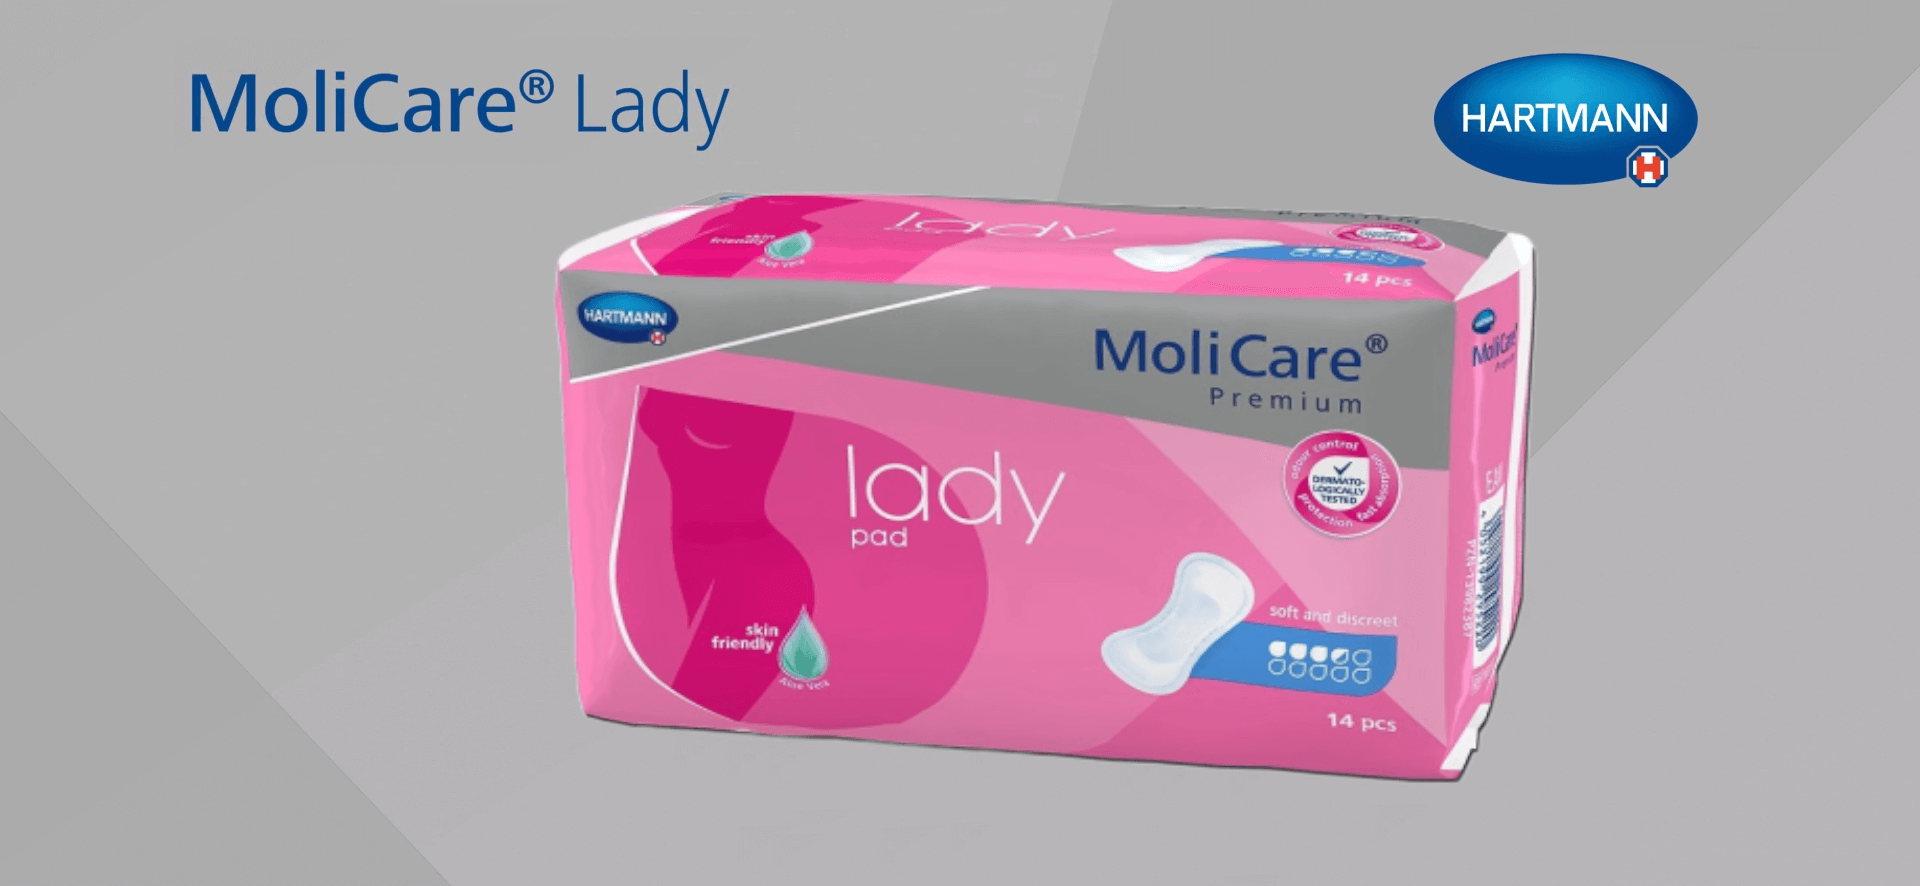 MoliCare Premium lady